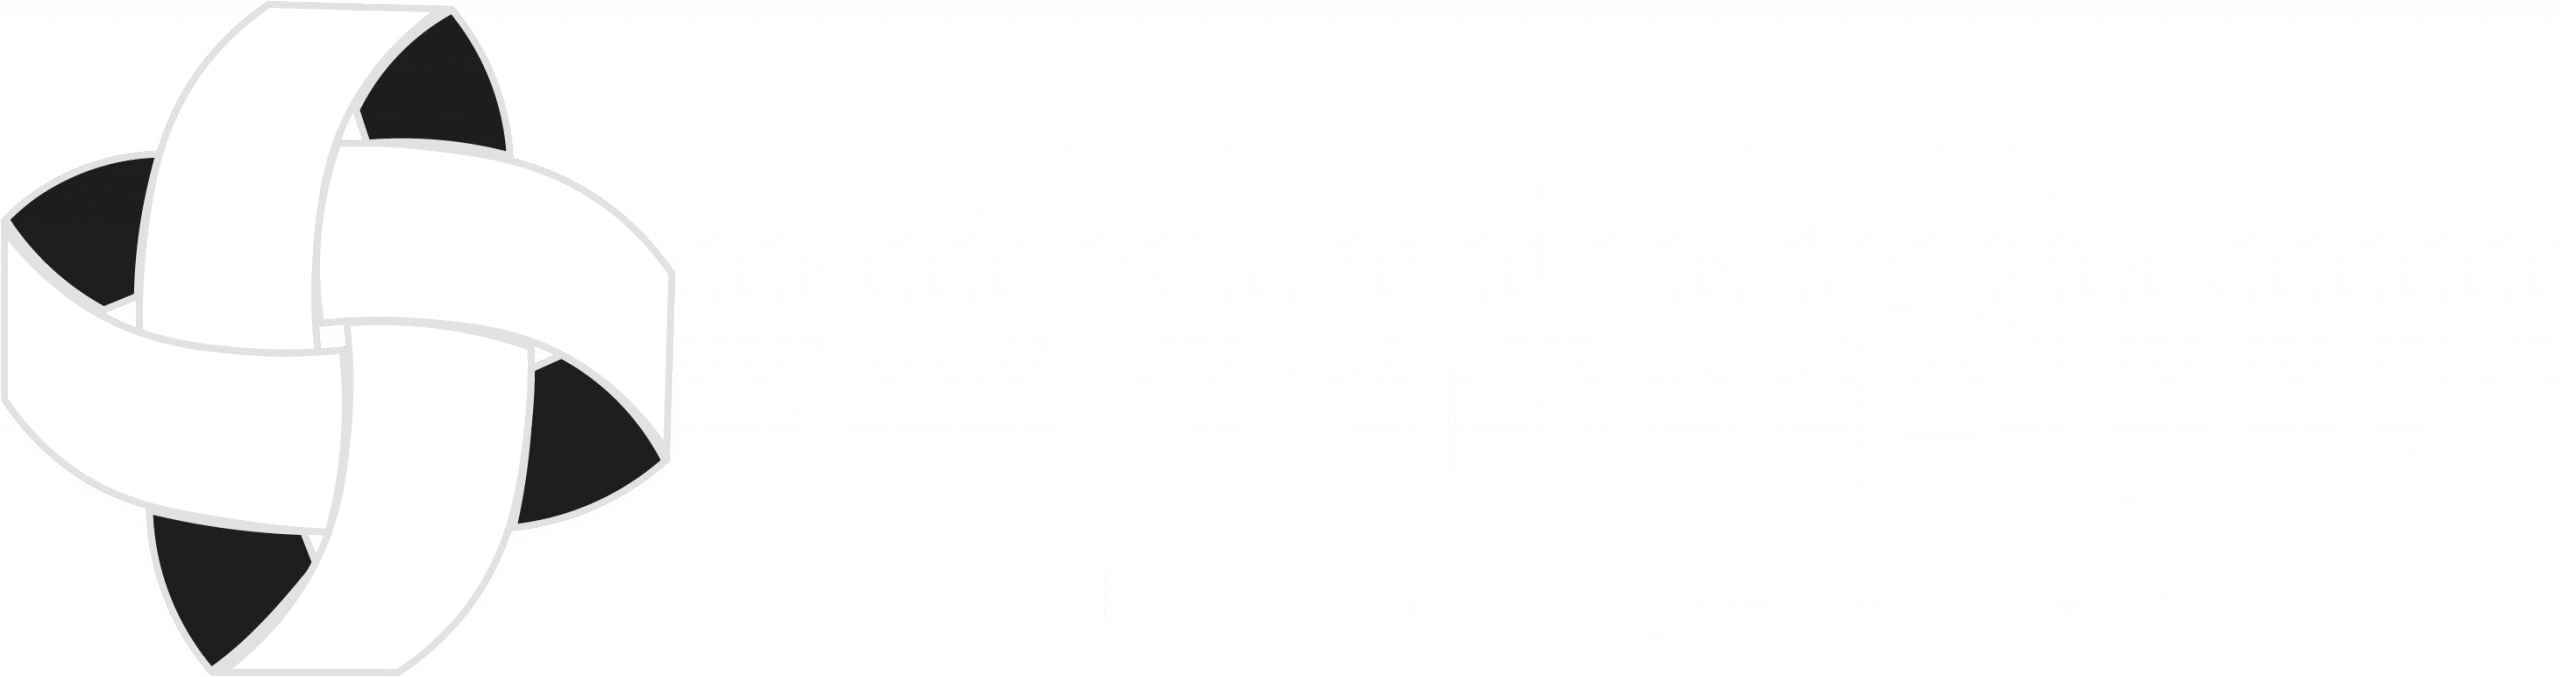 Platinum Creditplus Lending Corp.Brand Essentials